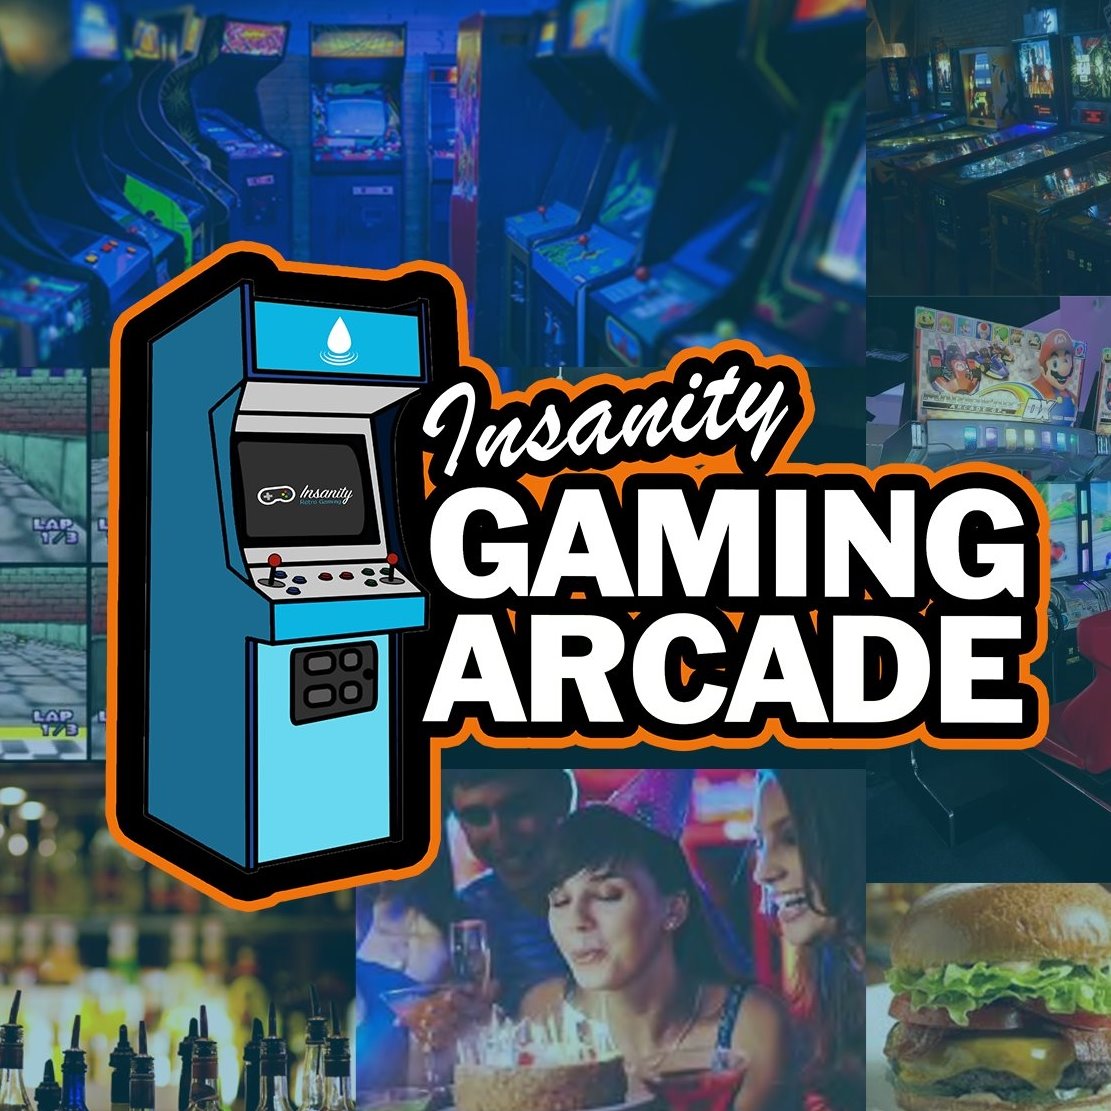 Insanity Gaming Arcade 